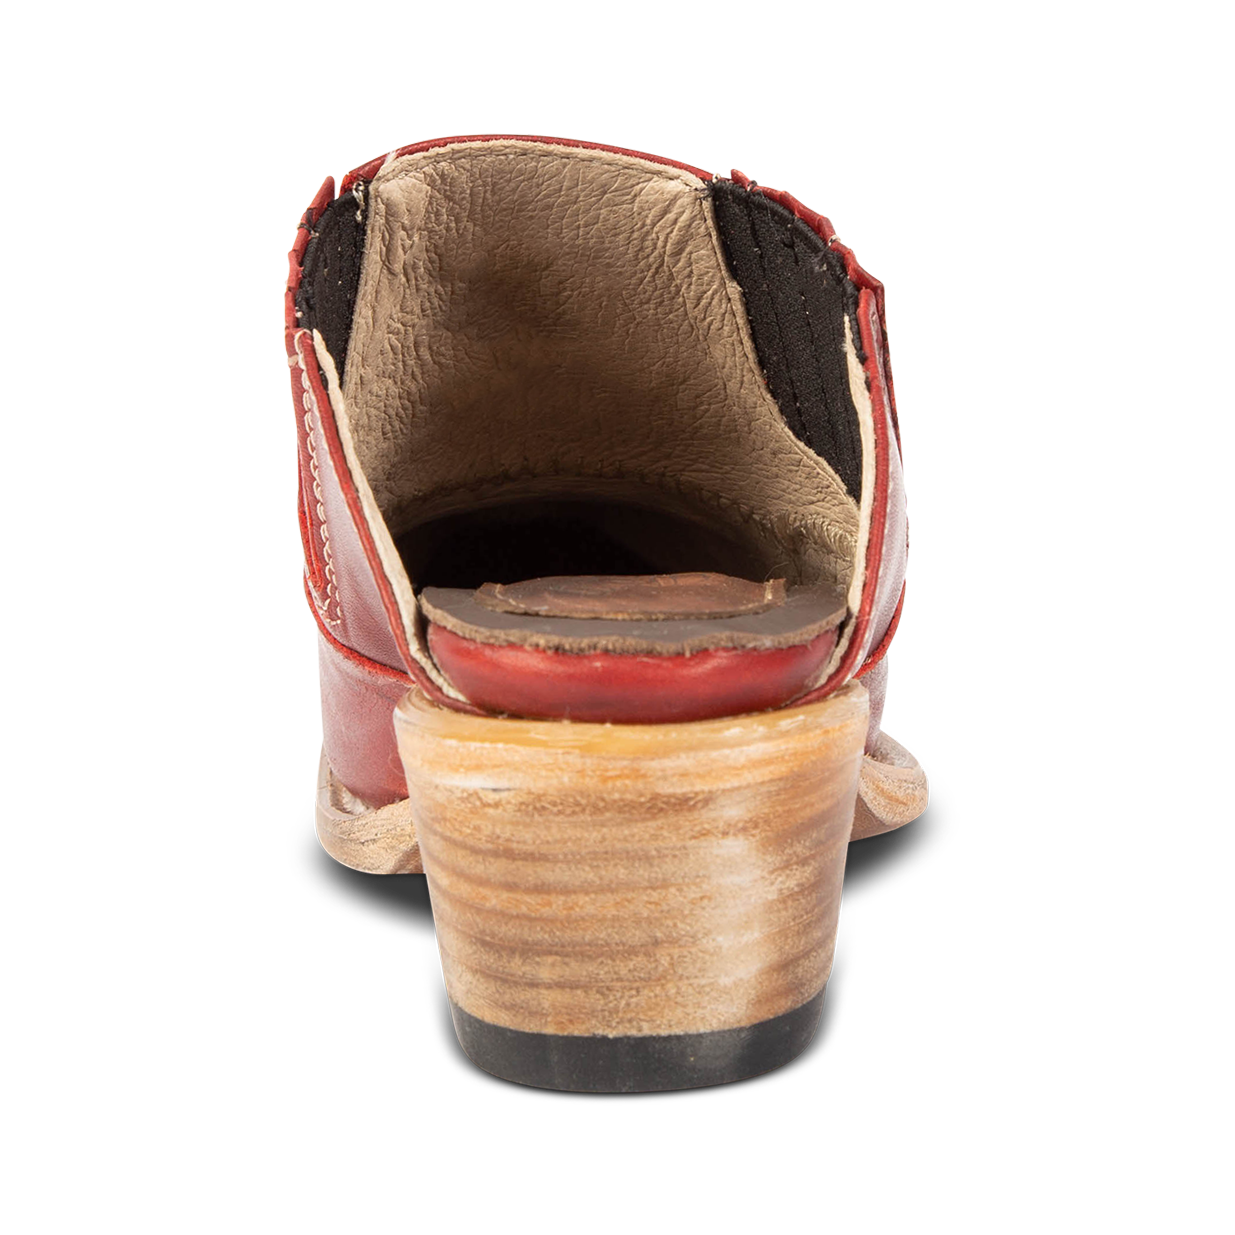 Back view showing wooden heel on FREEBIRD women's Wentworth red western mule